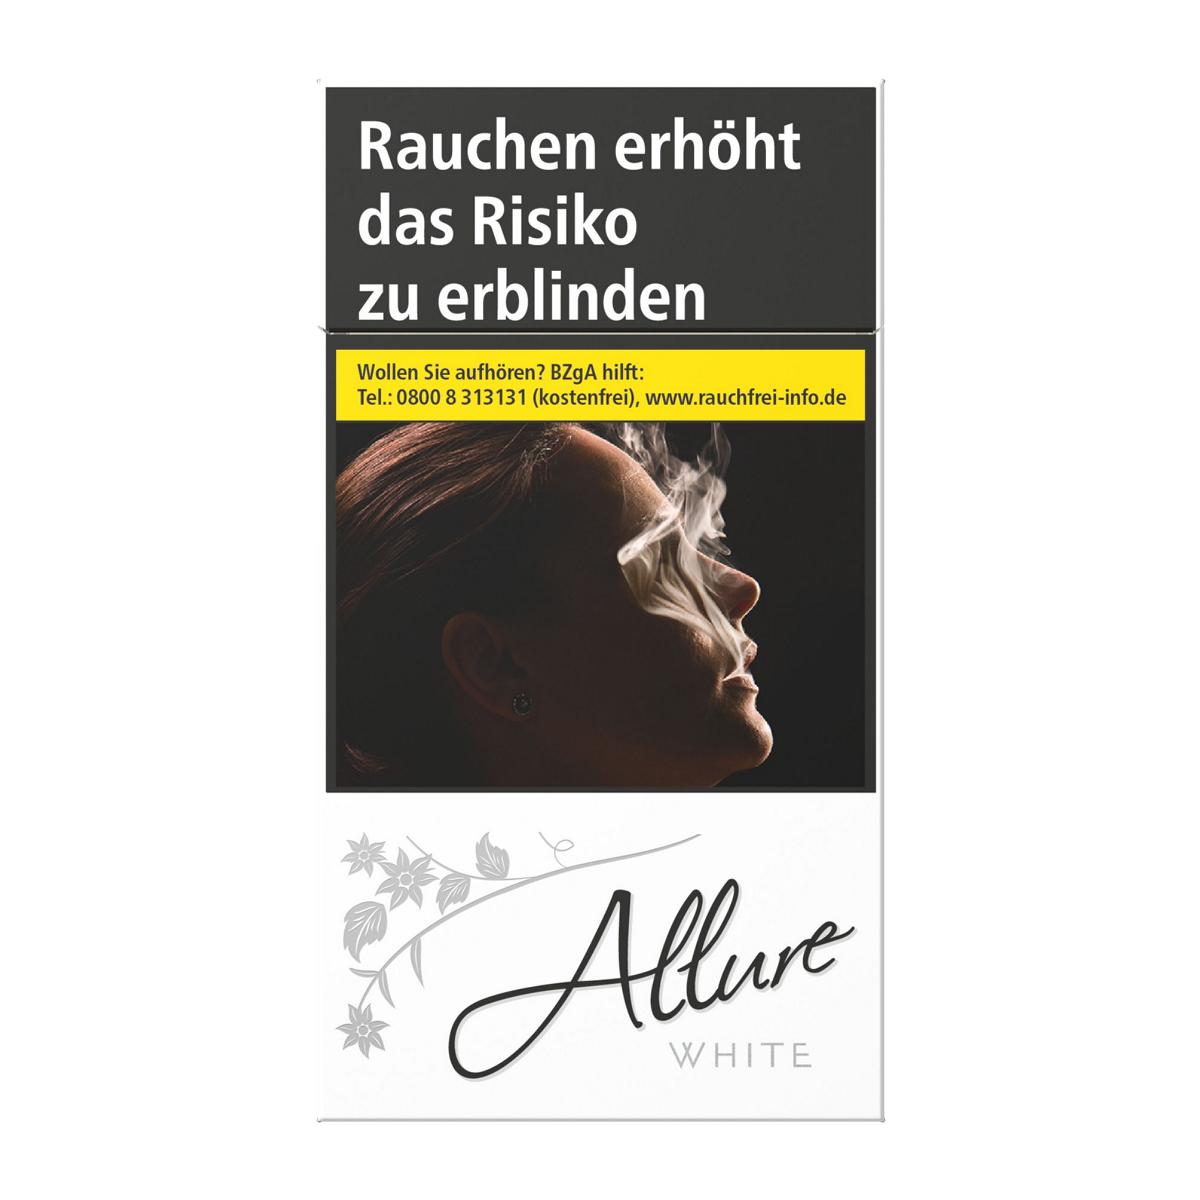 Allure Superslims Weiß (10x40)